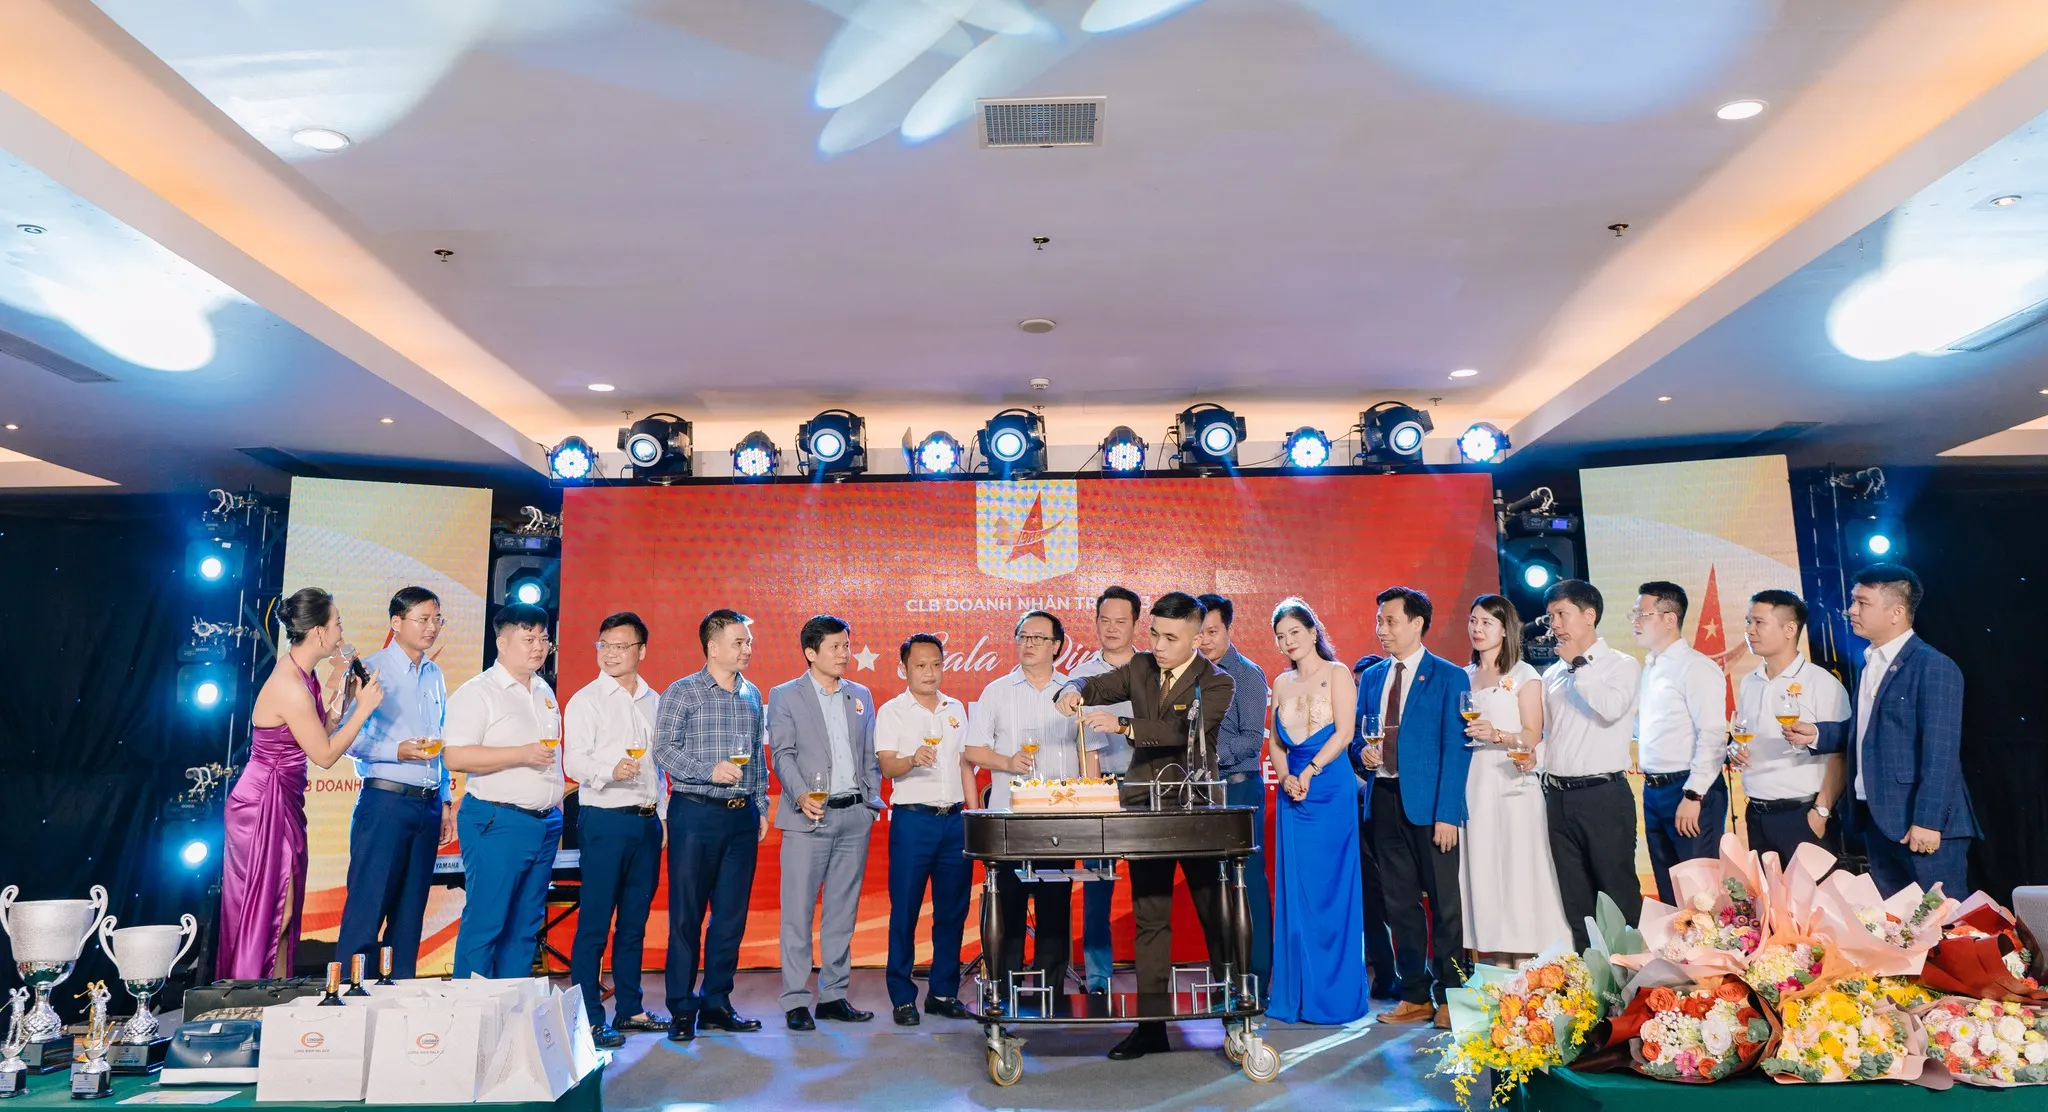 Doanh nhân Hoàng Hữu Thắng - Vinh dự nhận Bằng khen của Trung ương hội Doanh nhân trẻ Việt Nam đã có thành tích xây dựng và cống hiến trong phong trào hội